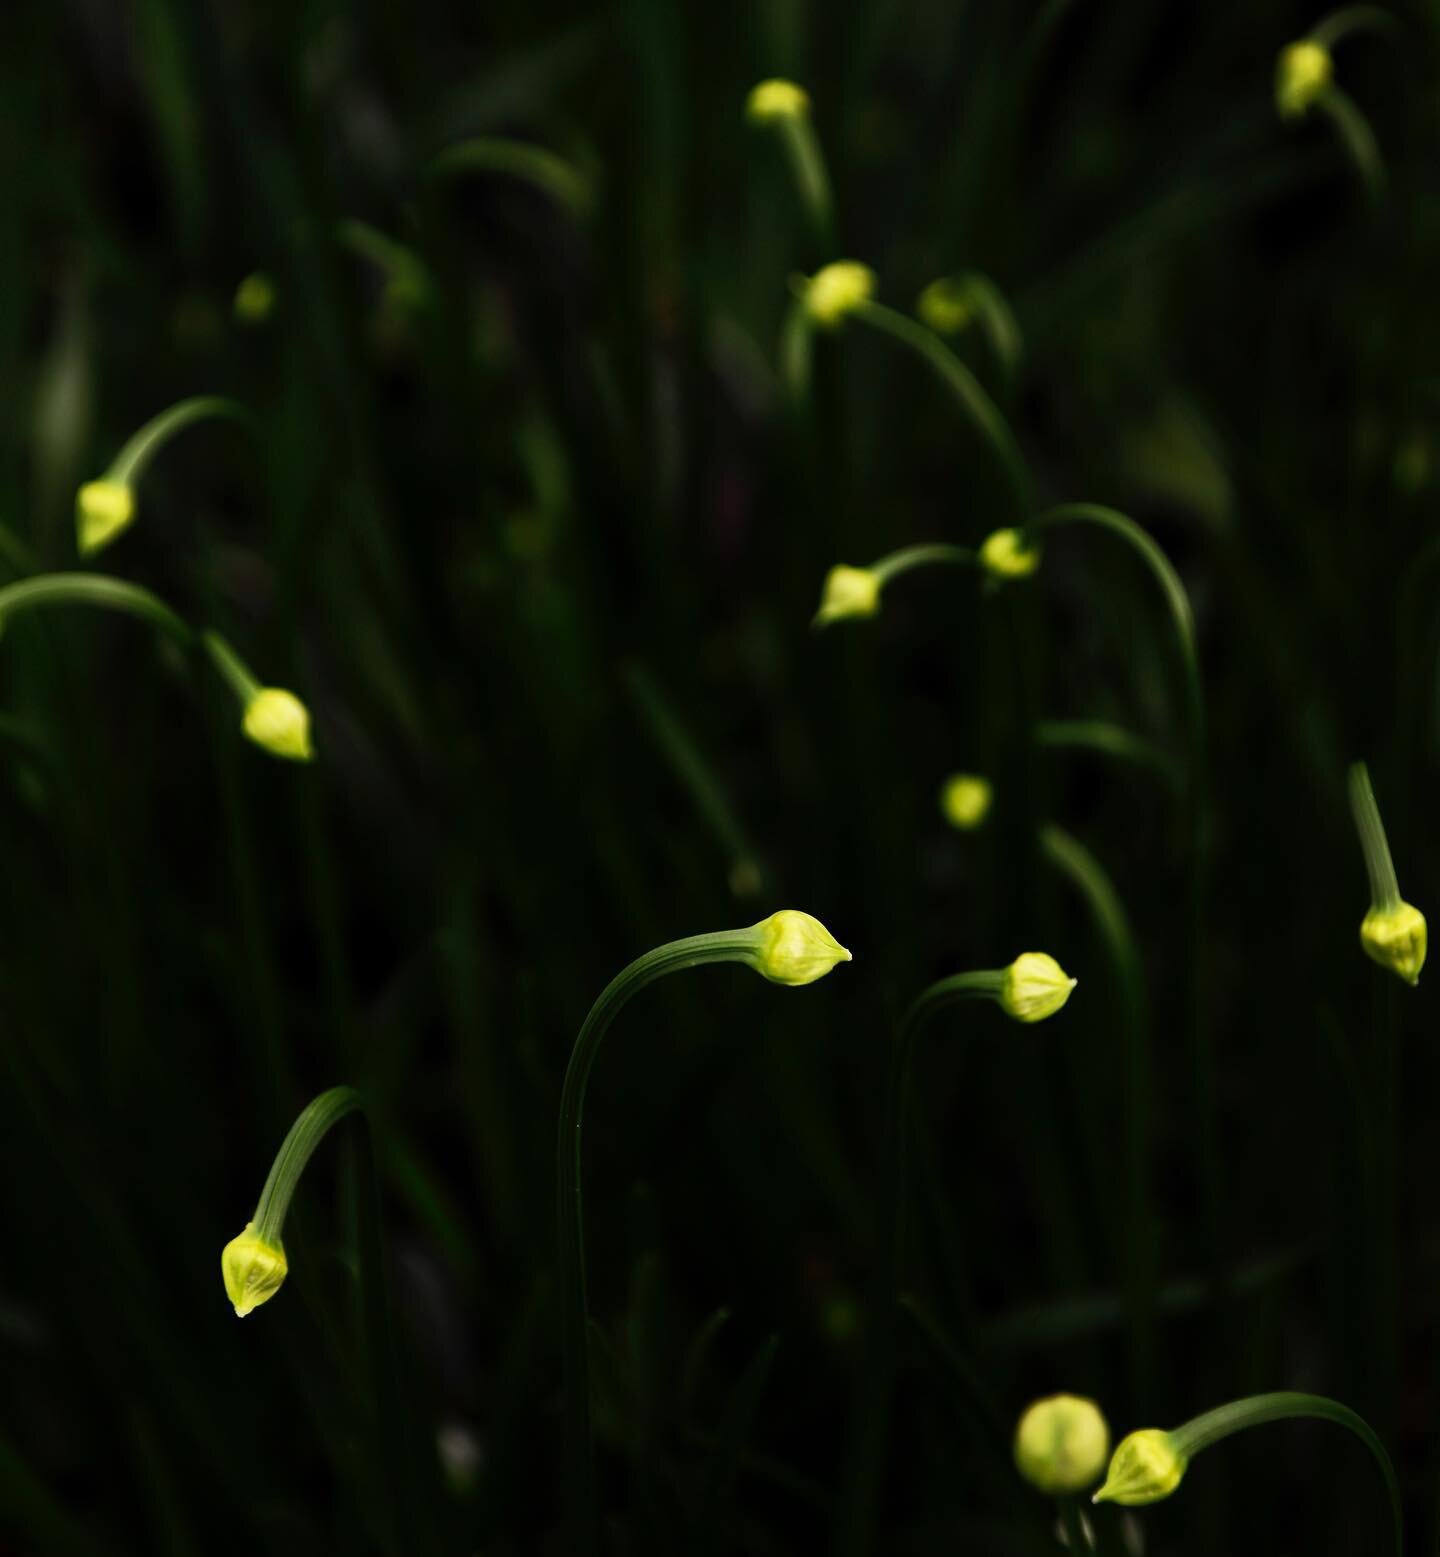 Allium buds.

#alliums #plantphotographer #gardenphotographer #flowerphotographer